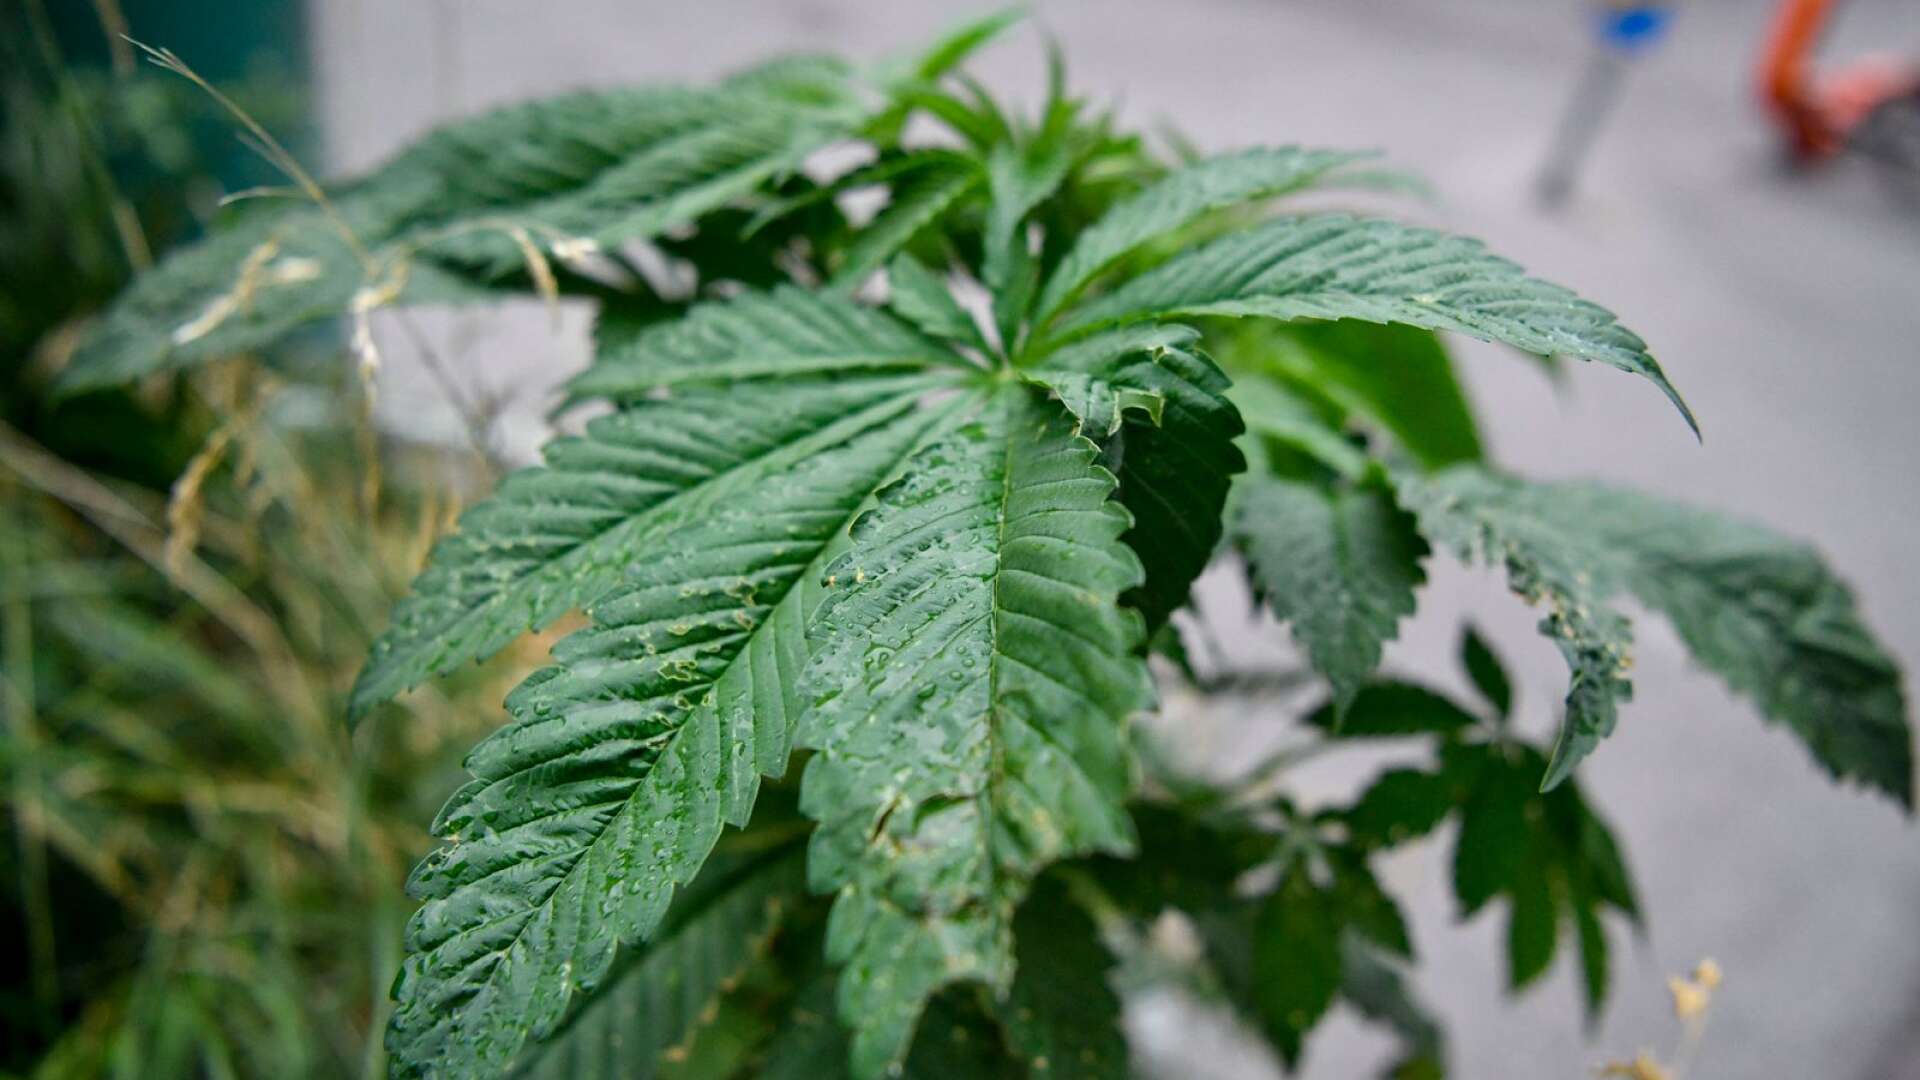 22 cannabisplantor beslagtog från mannens bostad i augusti förra året. Dock inte denna planta. Genrebild.